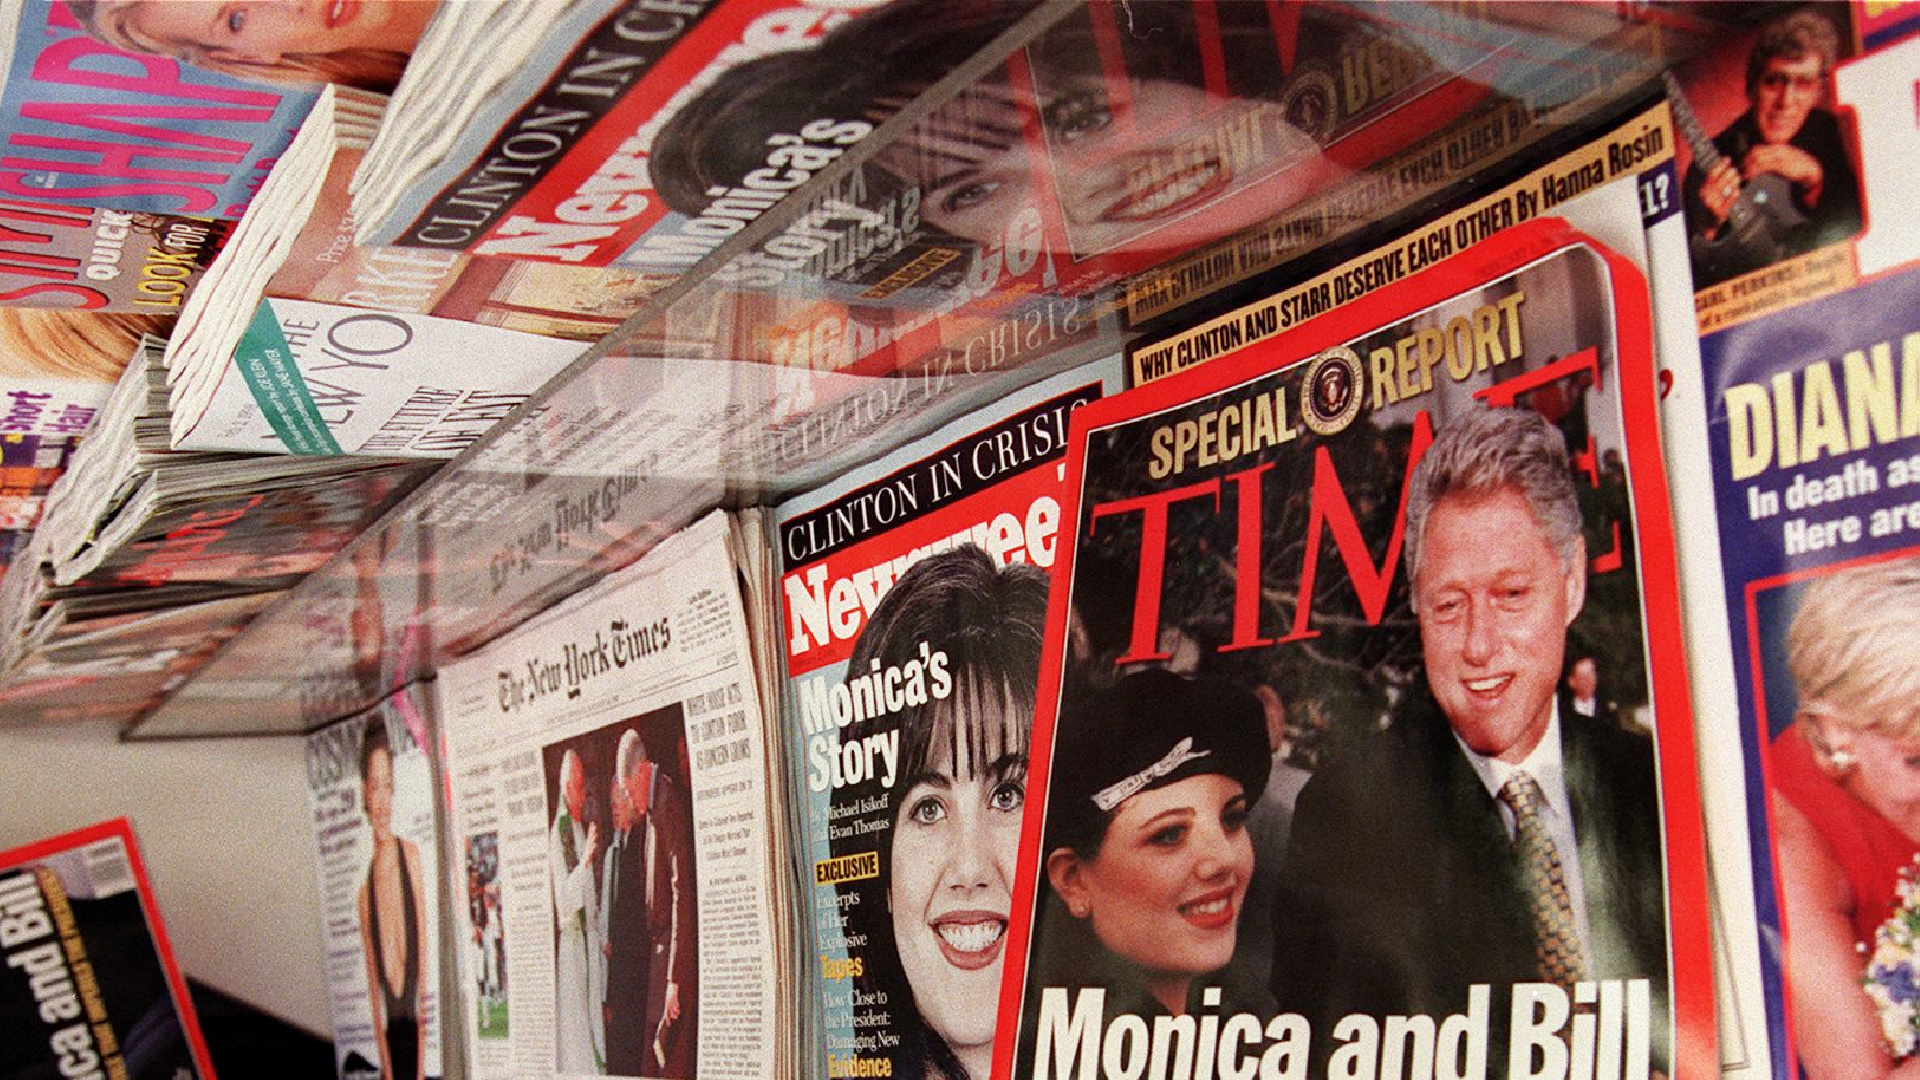 La verdadera historia de Monica Lewinsky y Bill Clinton